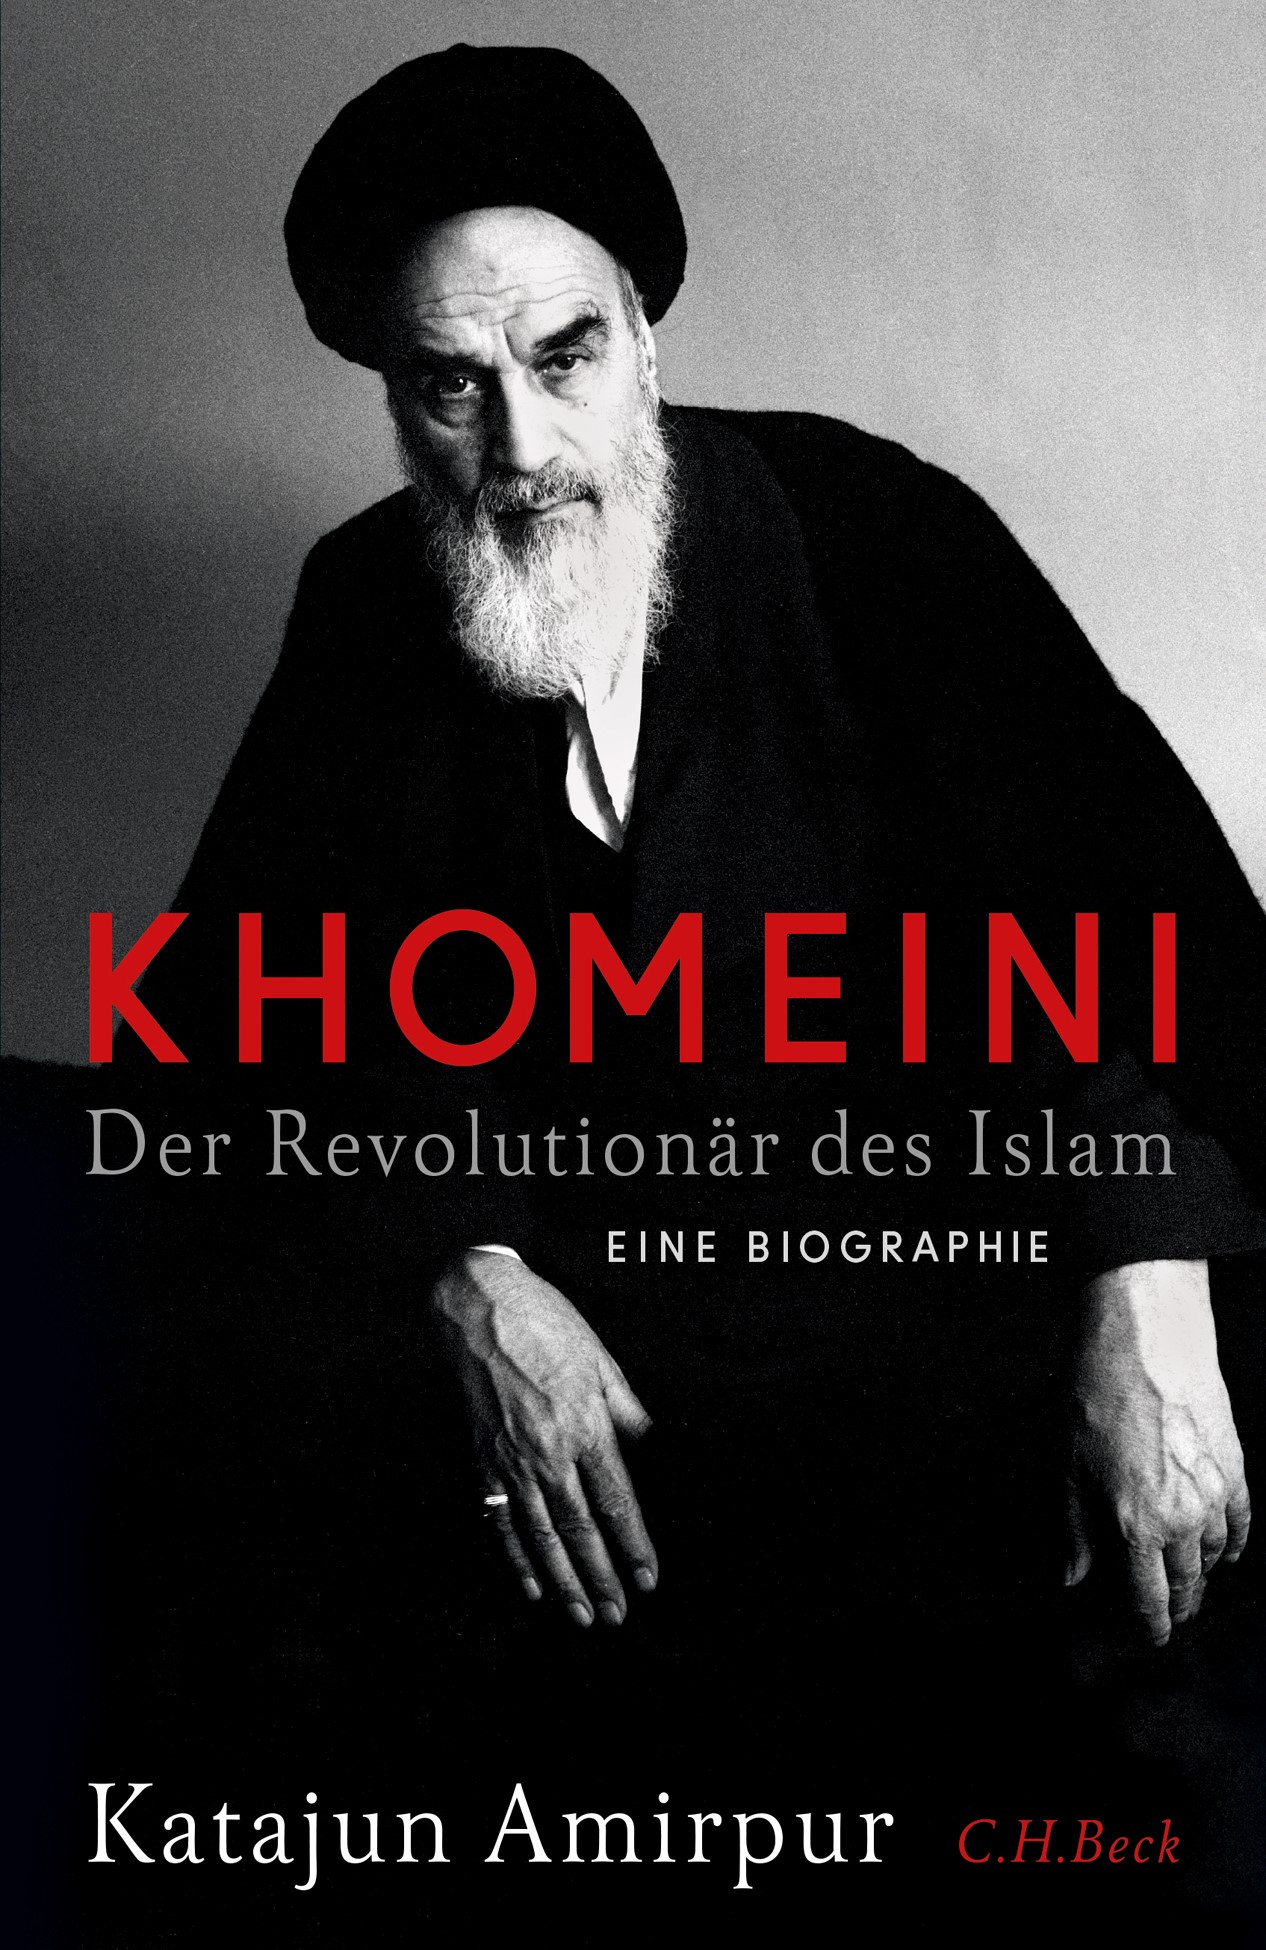 Buchcover: "Khomeini. Der Revolutionär des Islam. Eine Biographie", von Katajun Amirpur. (Foto: C.H. Beck Verlag)